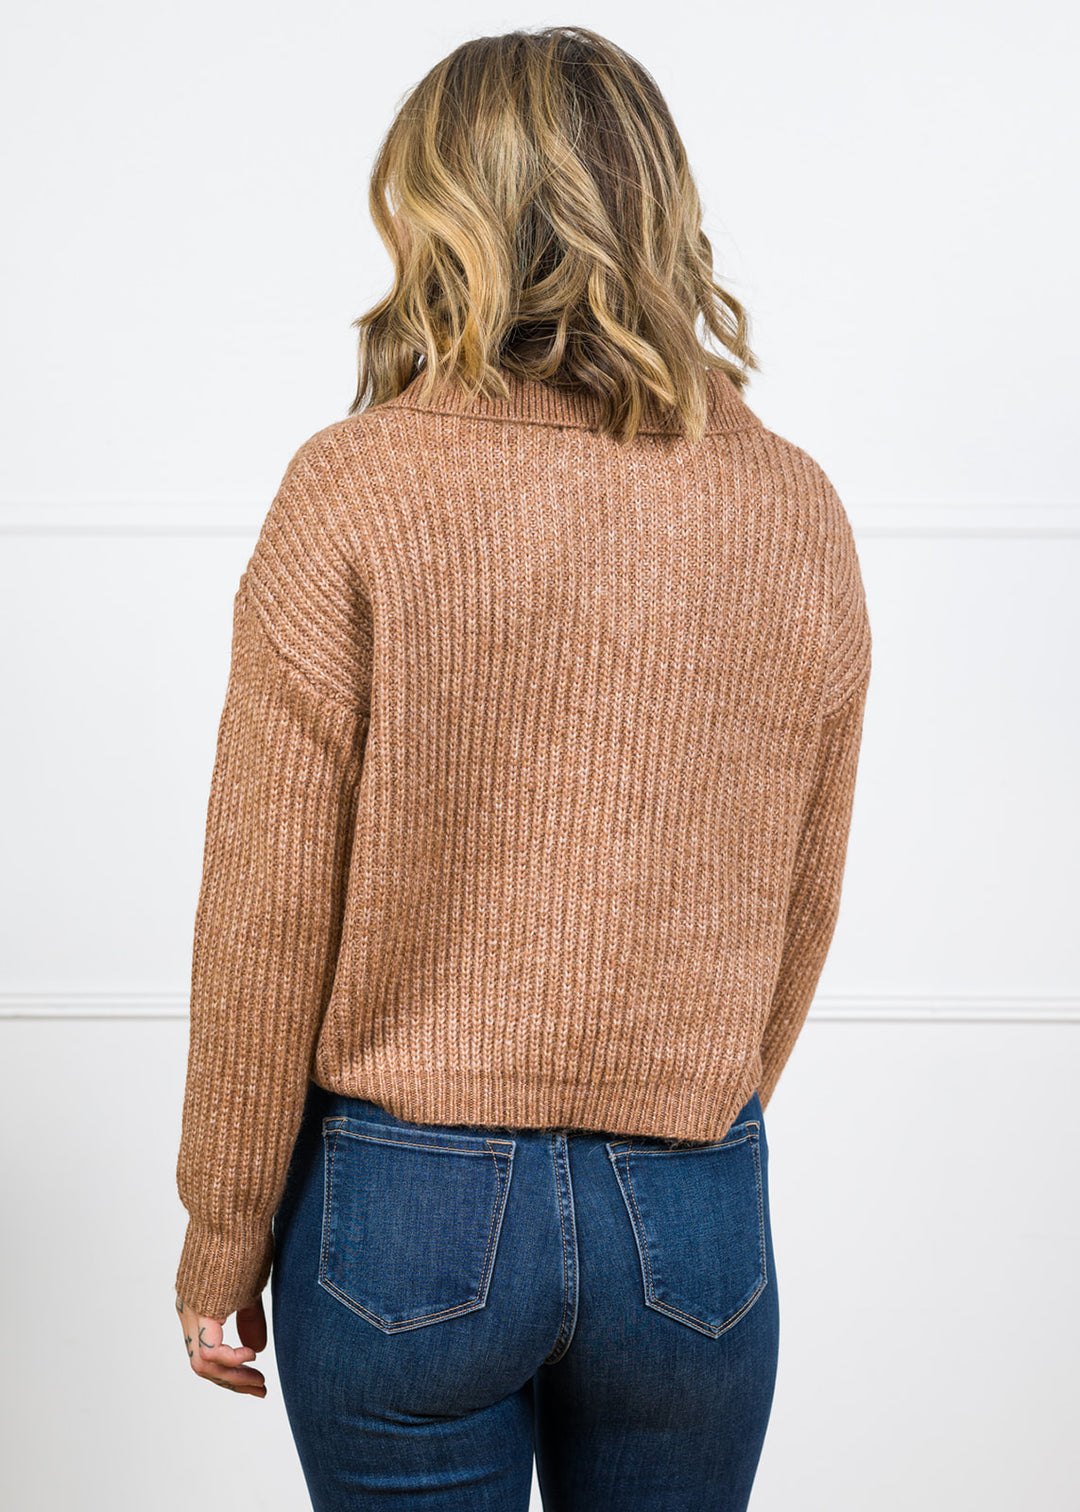 Zen Knit Collared Sweater (Deep Camel)